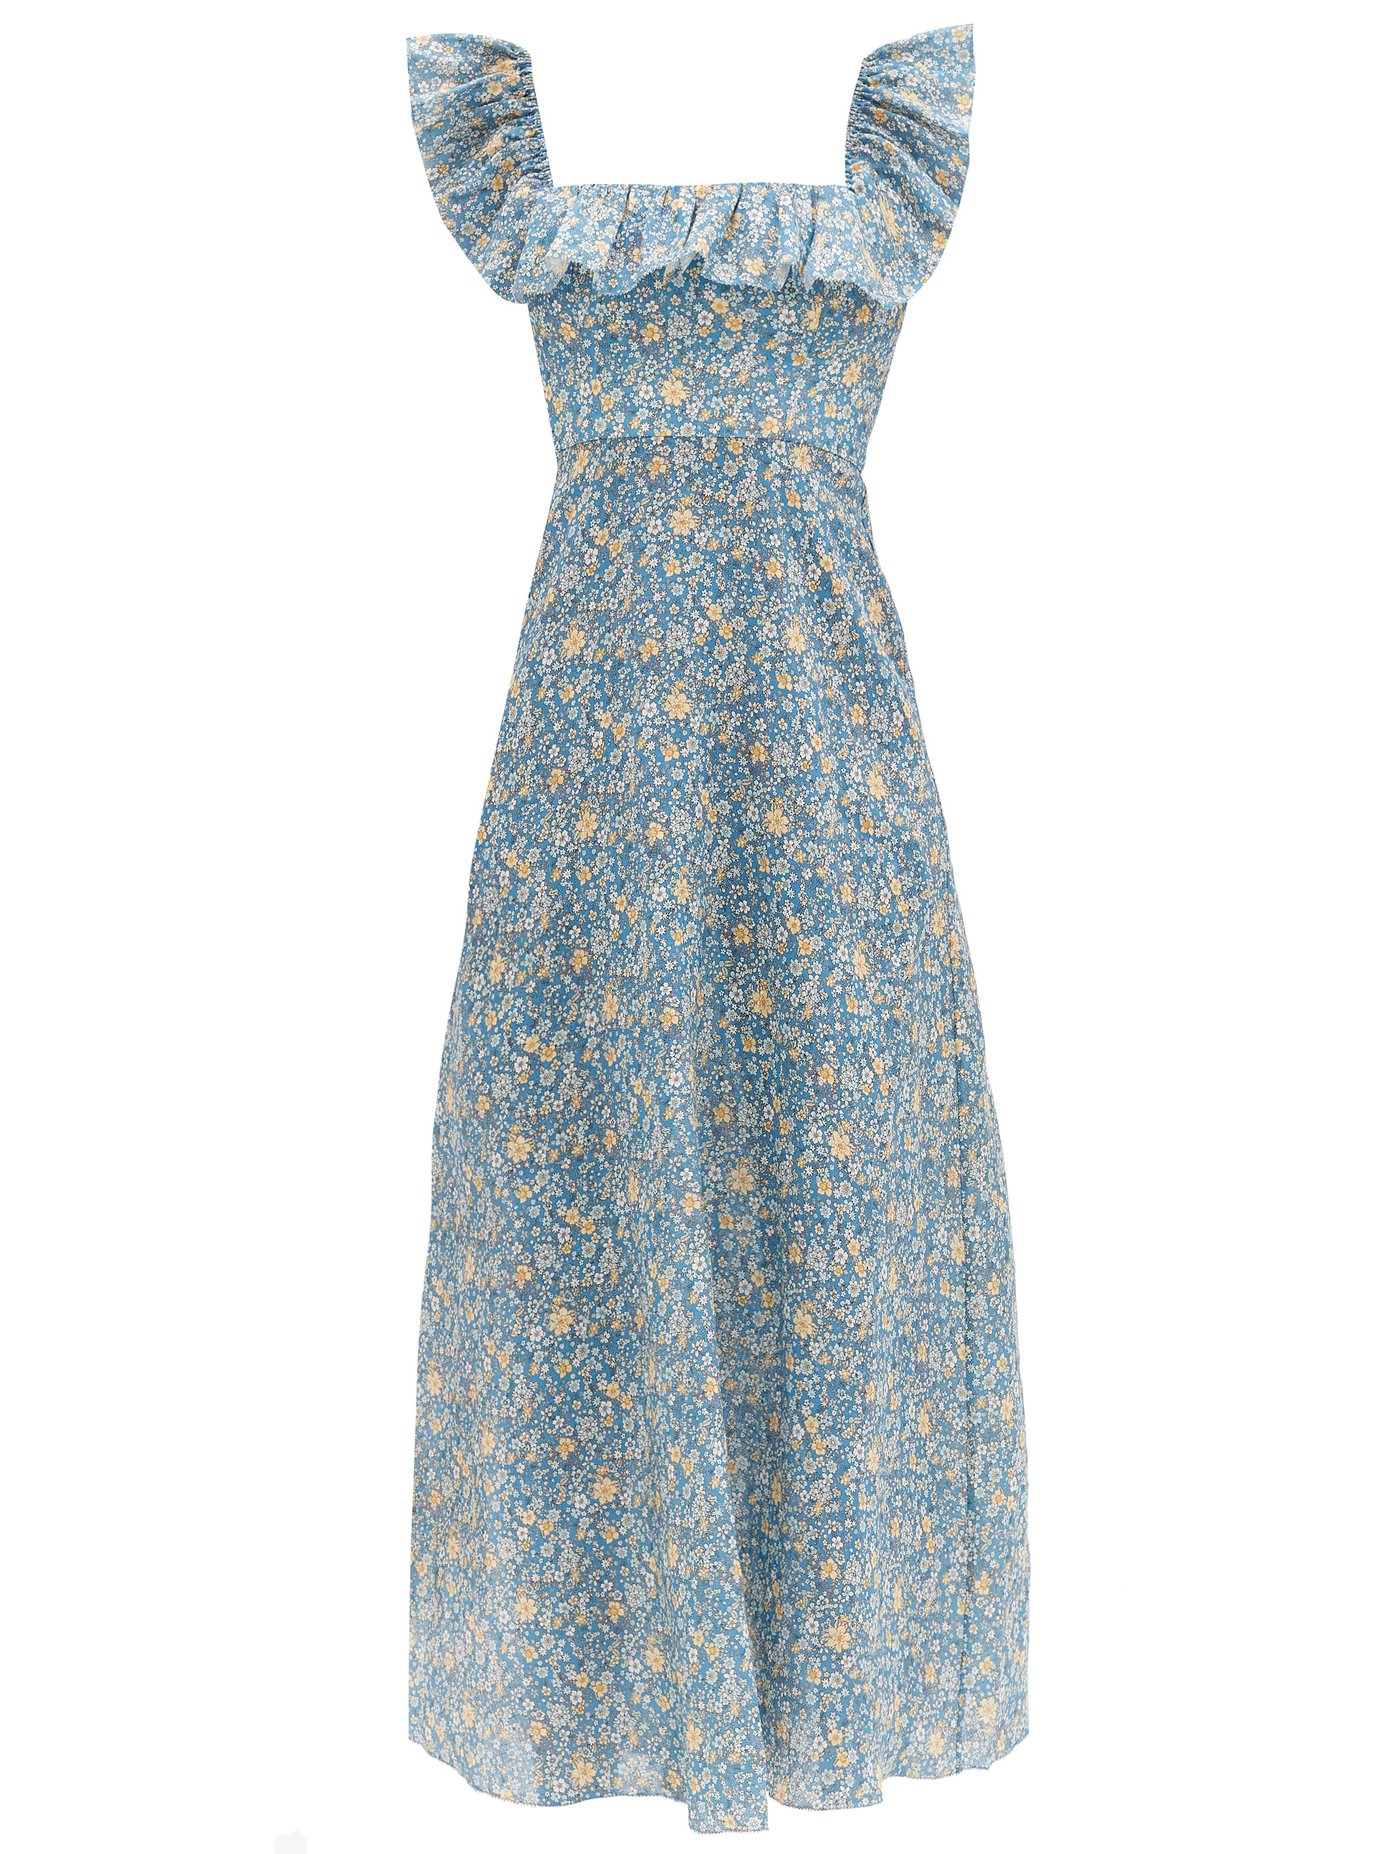 zimmermann blue floral dress